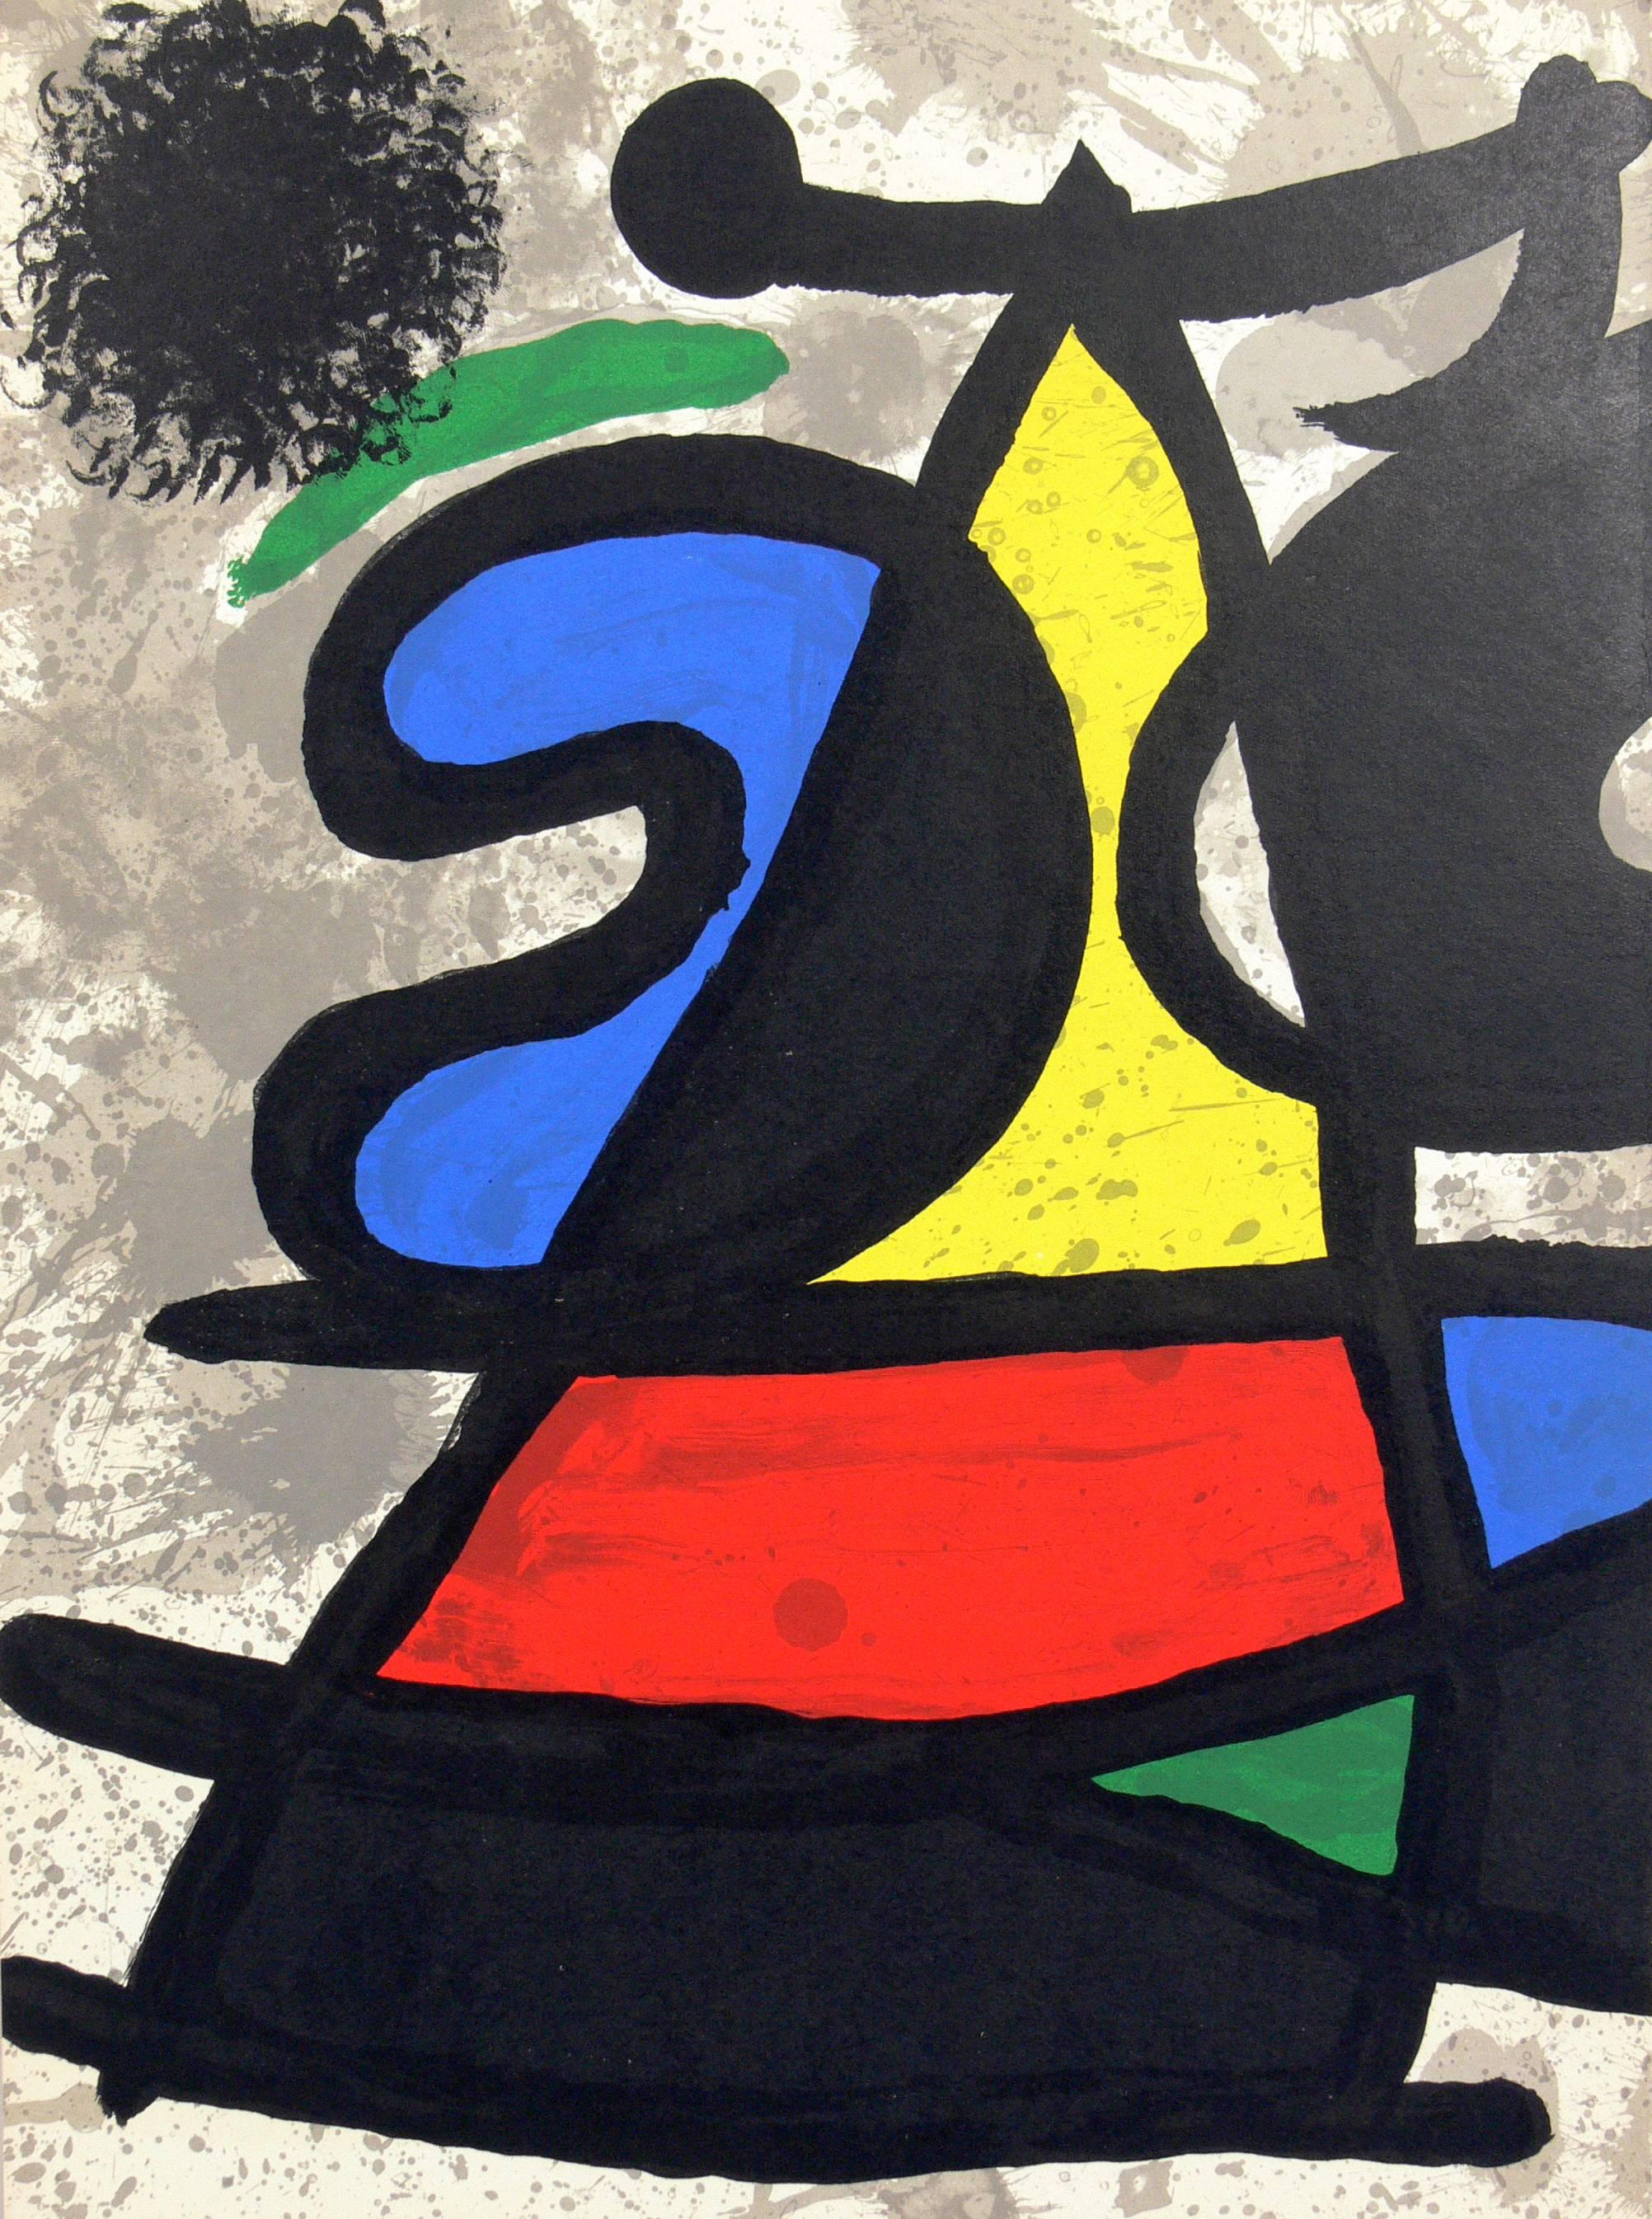 Sélection de lithographies en couleur de Joan Miro, France, vers les années 1960. Seule la lithographie du centre est disponible. Les lithographies de droite et de gauche ont été vendues. Nous avons acheté un groupe de ces lithographies en couleur